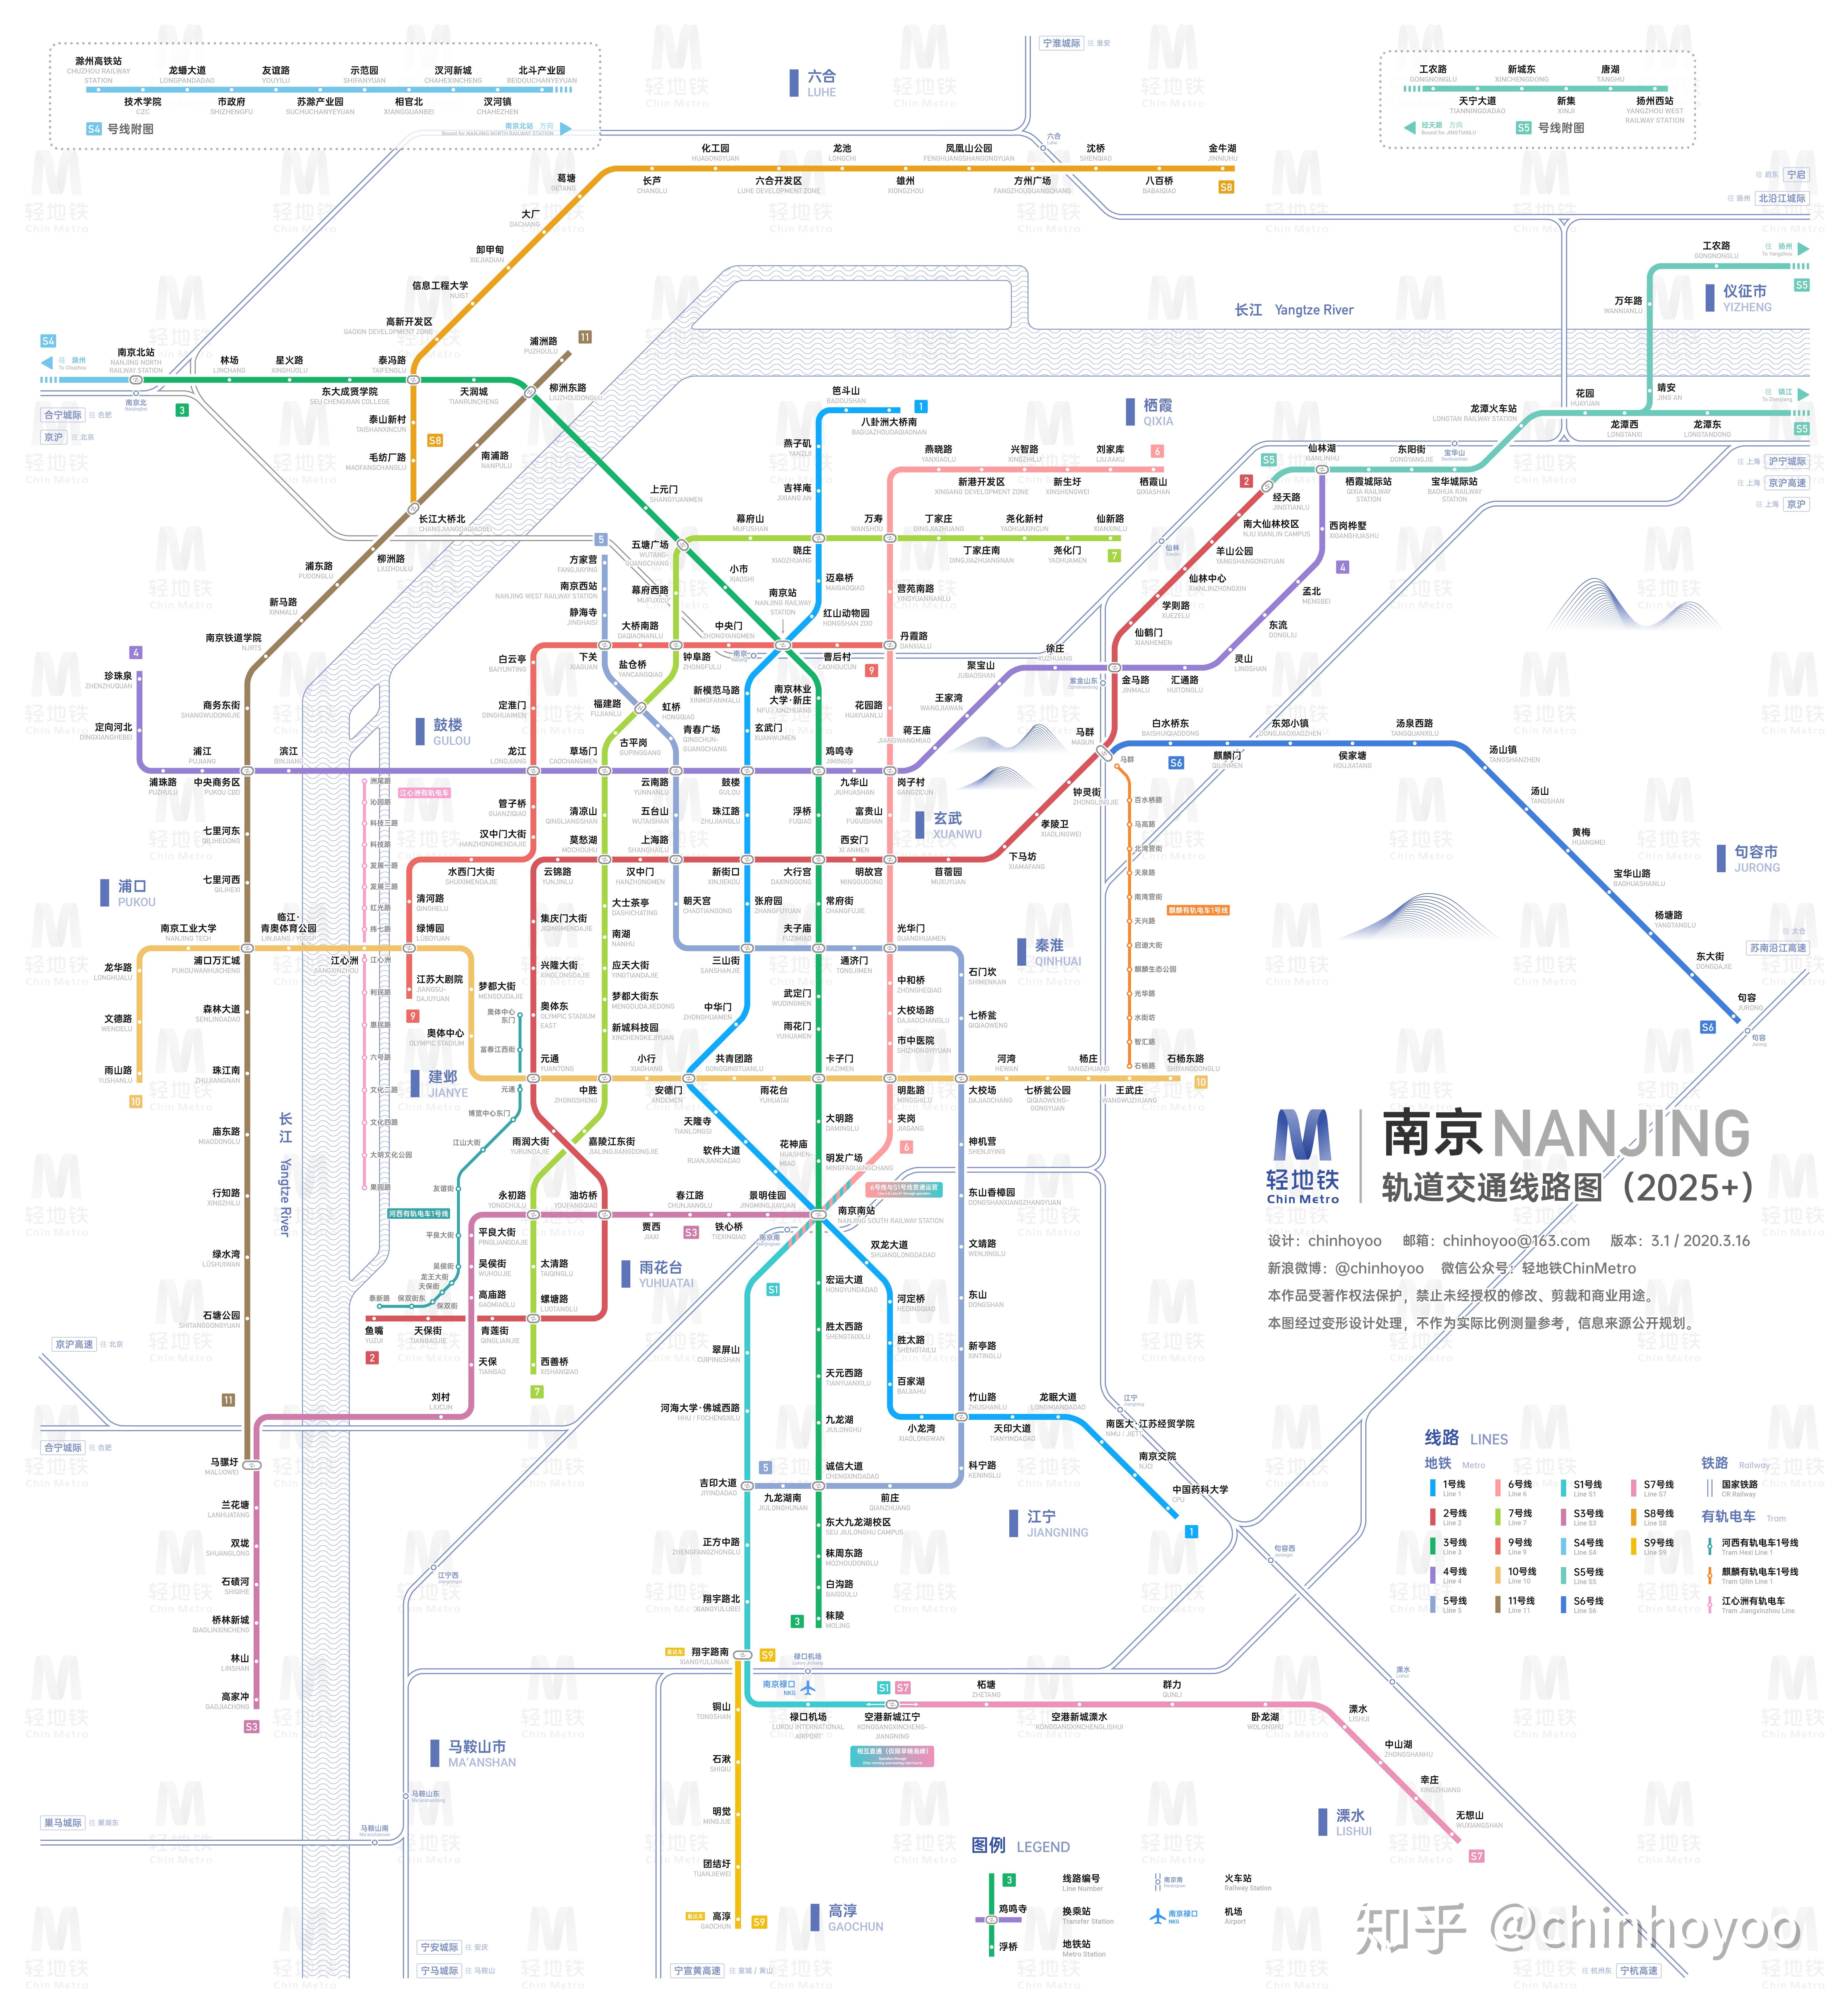 扩散！智汇自助充值机已全面覆盖南京地铁7条线路139个车站啦！